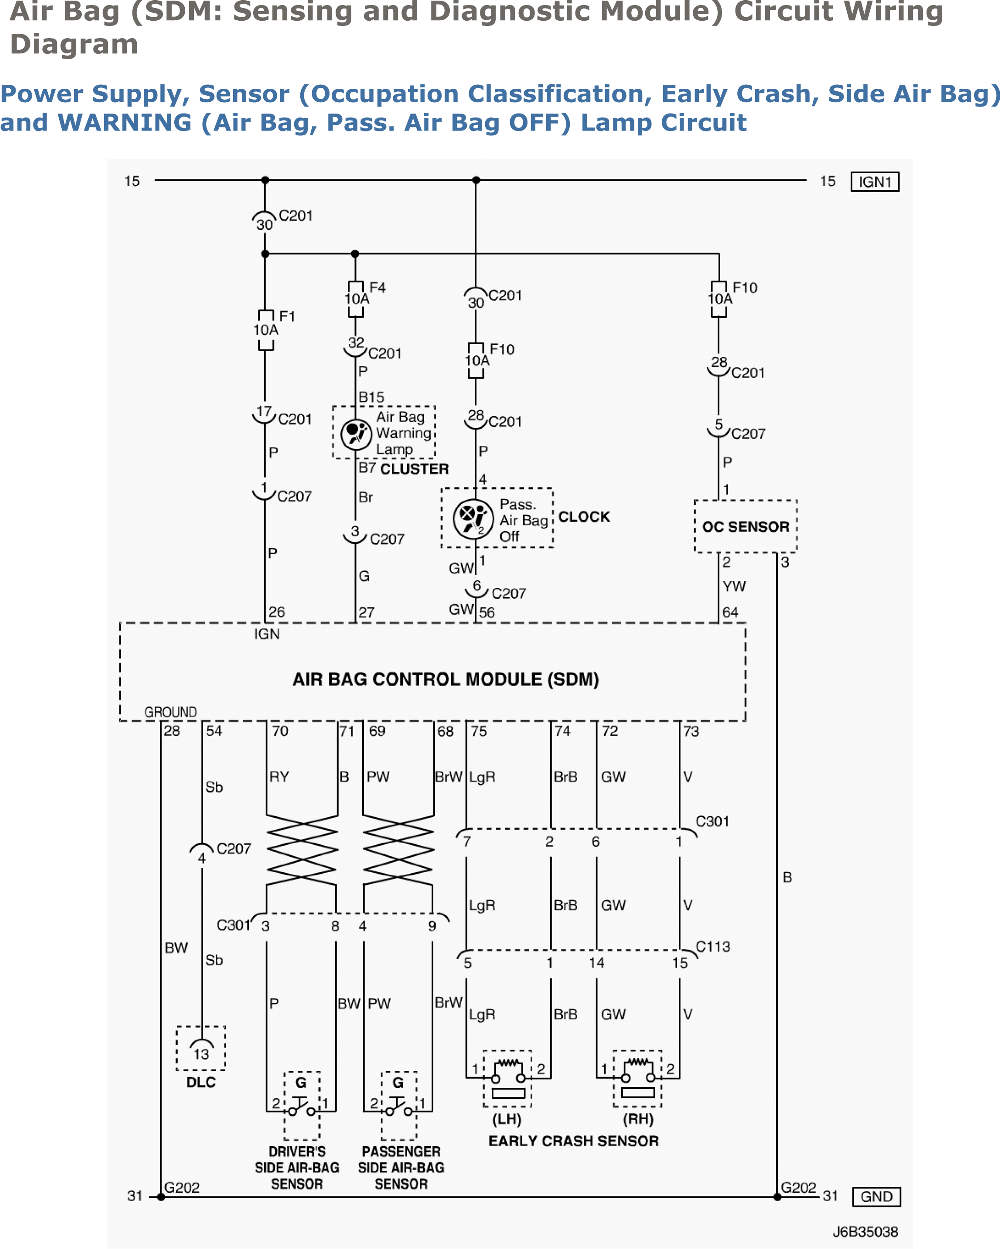 wiring diagram for windshield wiper motor suzuki forenza